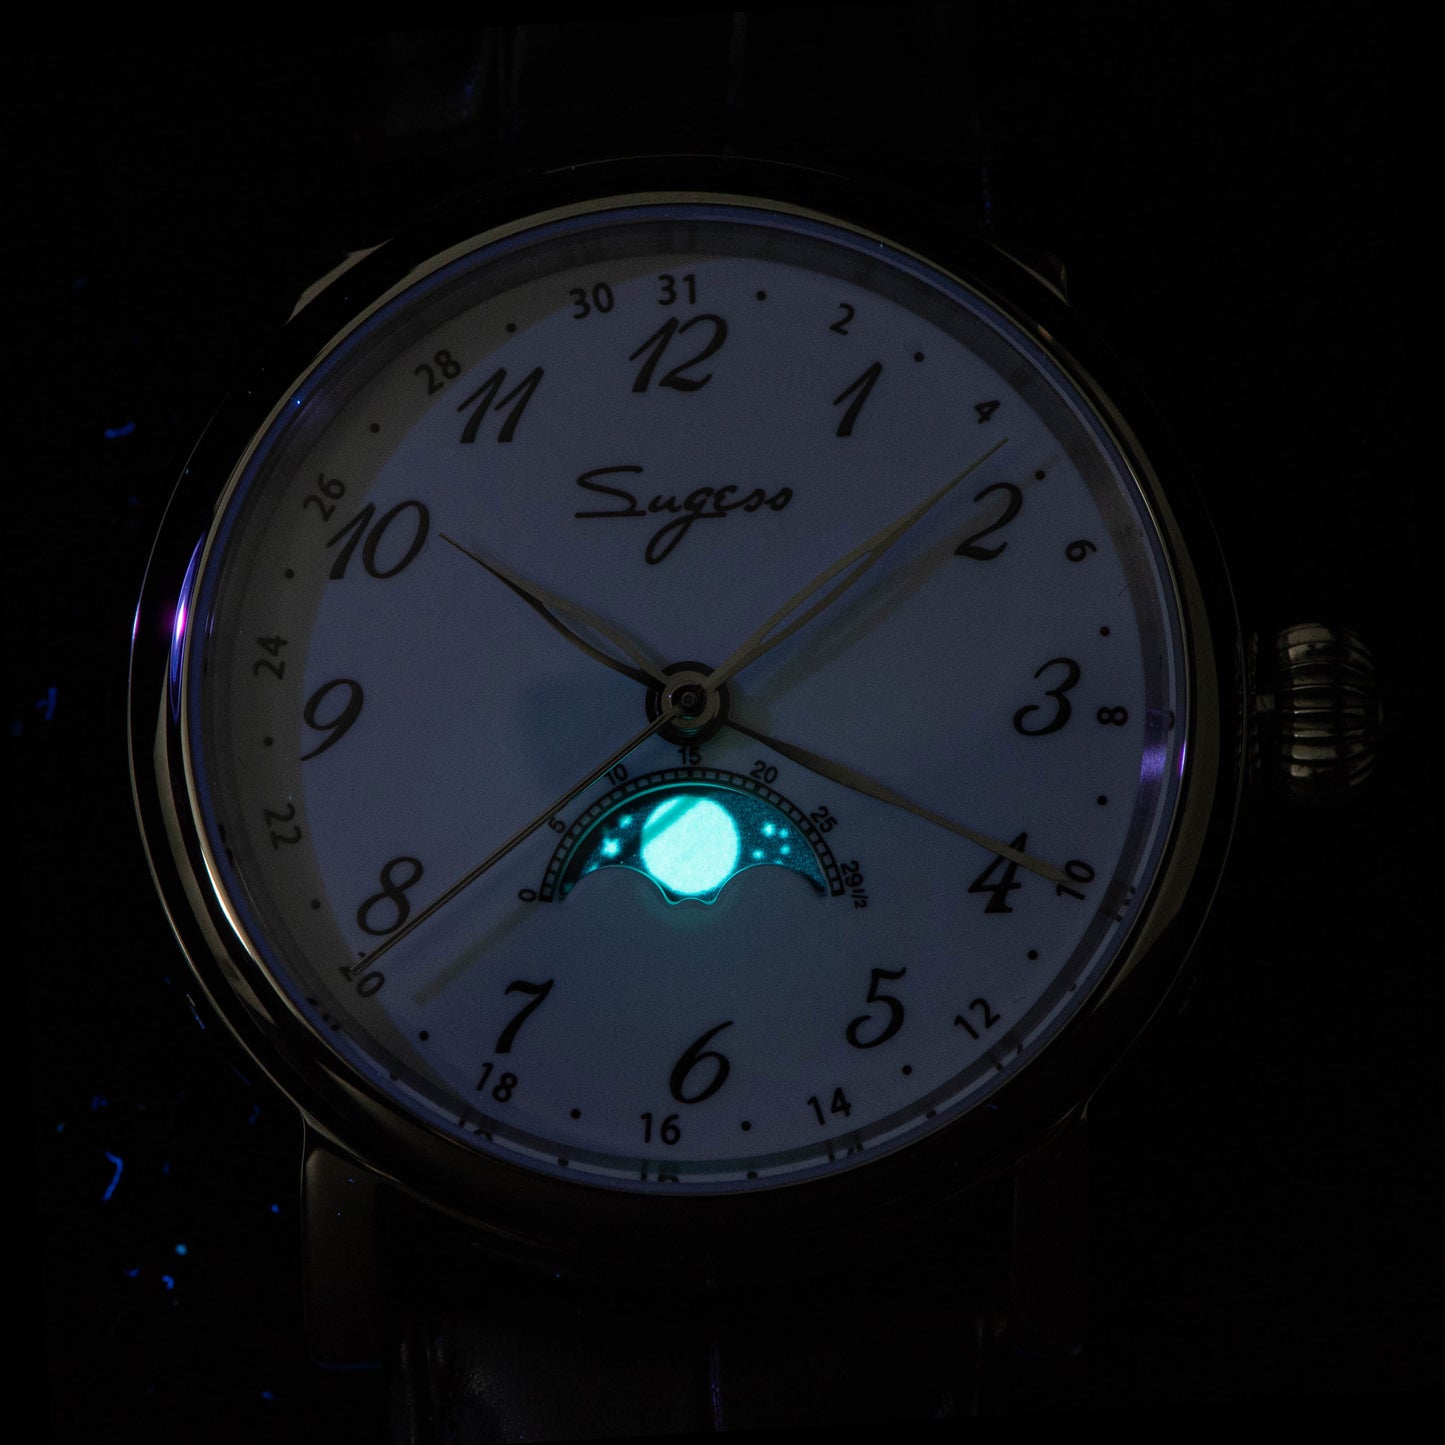 月相大師自動腕錶 S395.02